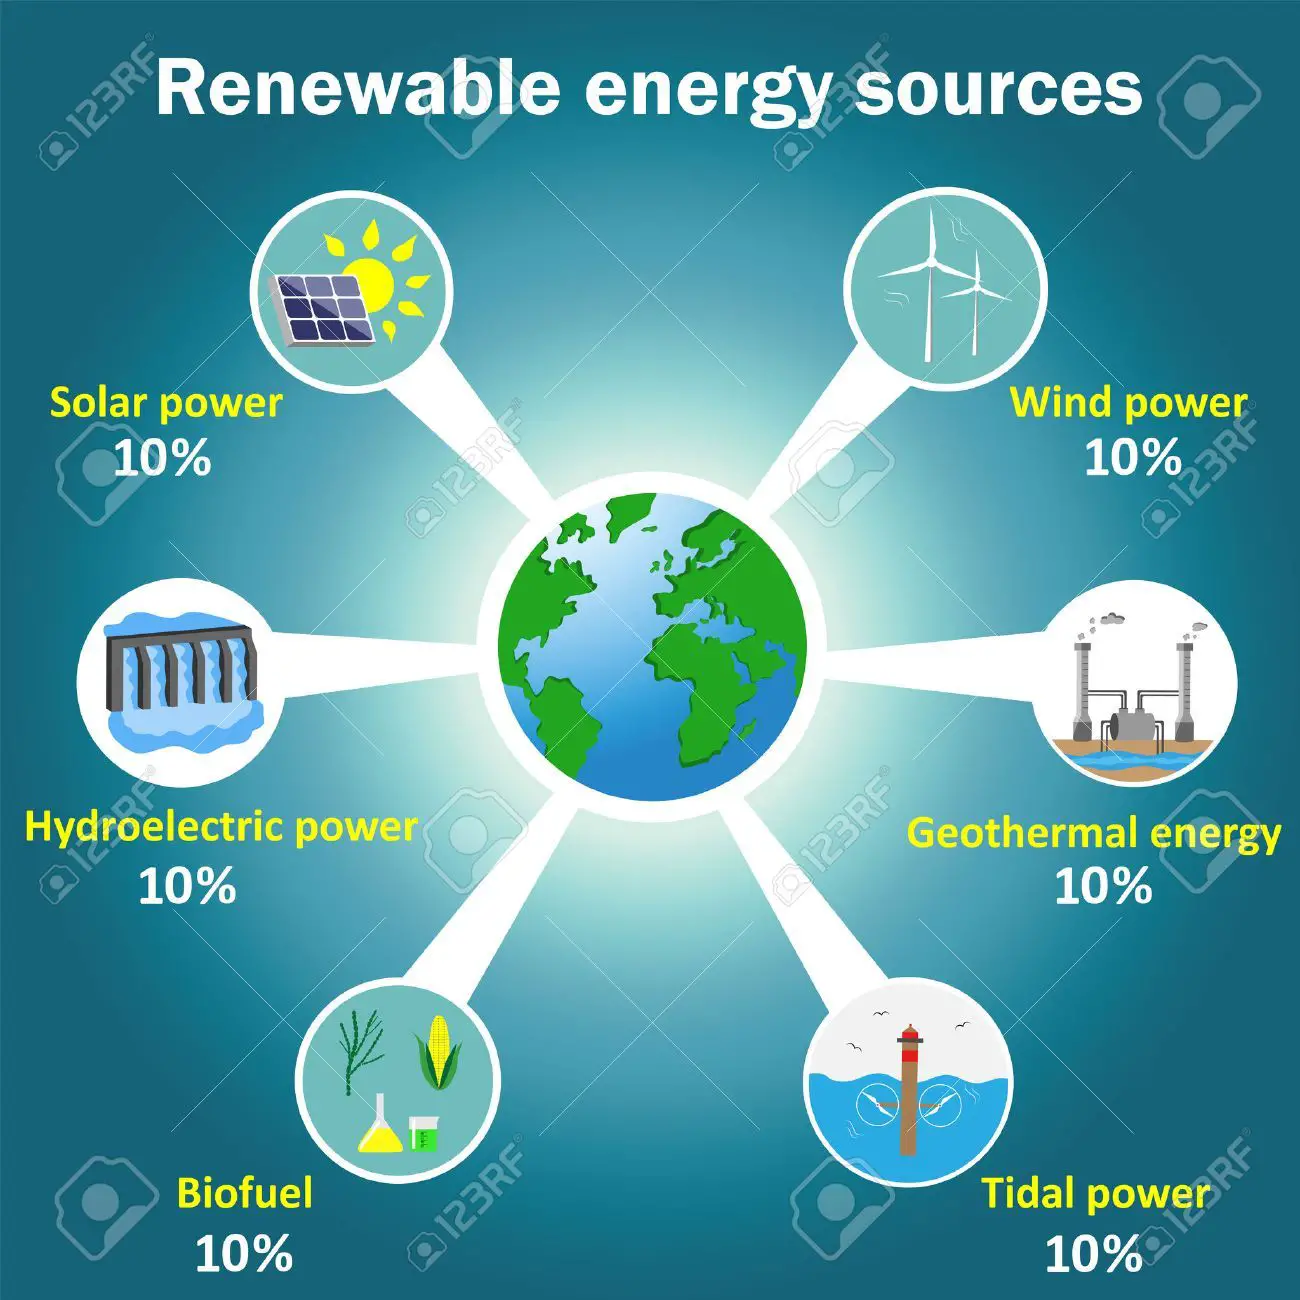 Renewable energy resources.